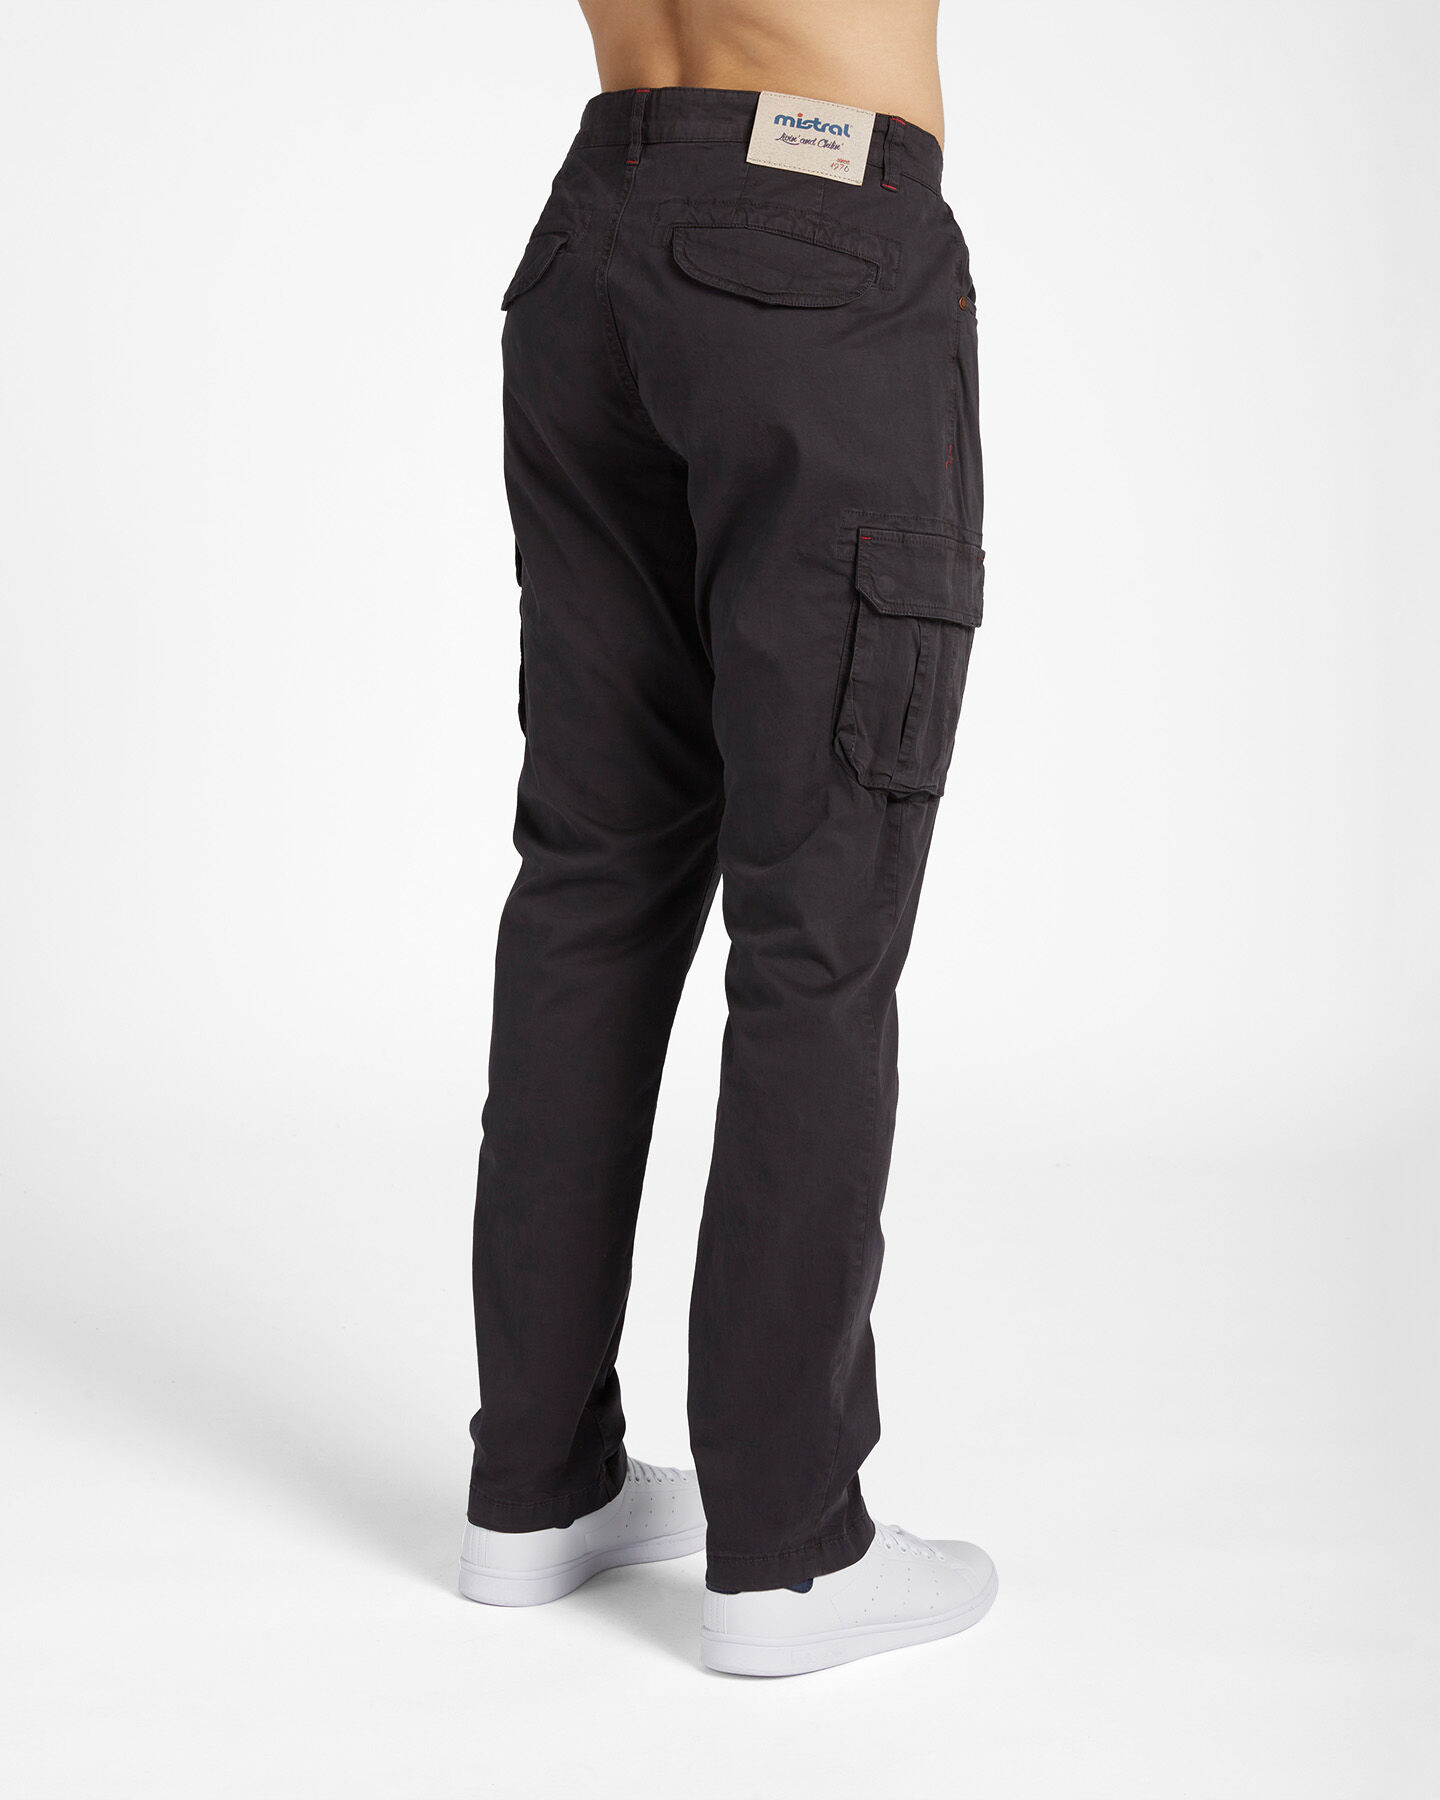  Pantalone MISTRAL TASCONATO M S4100932|051|46 scatto 1